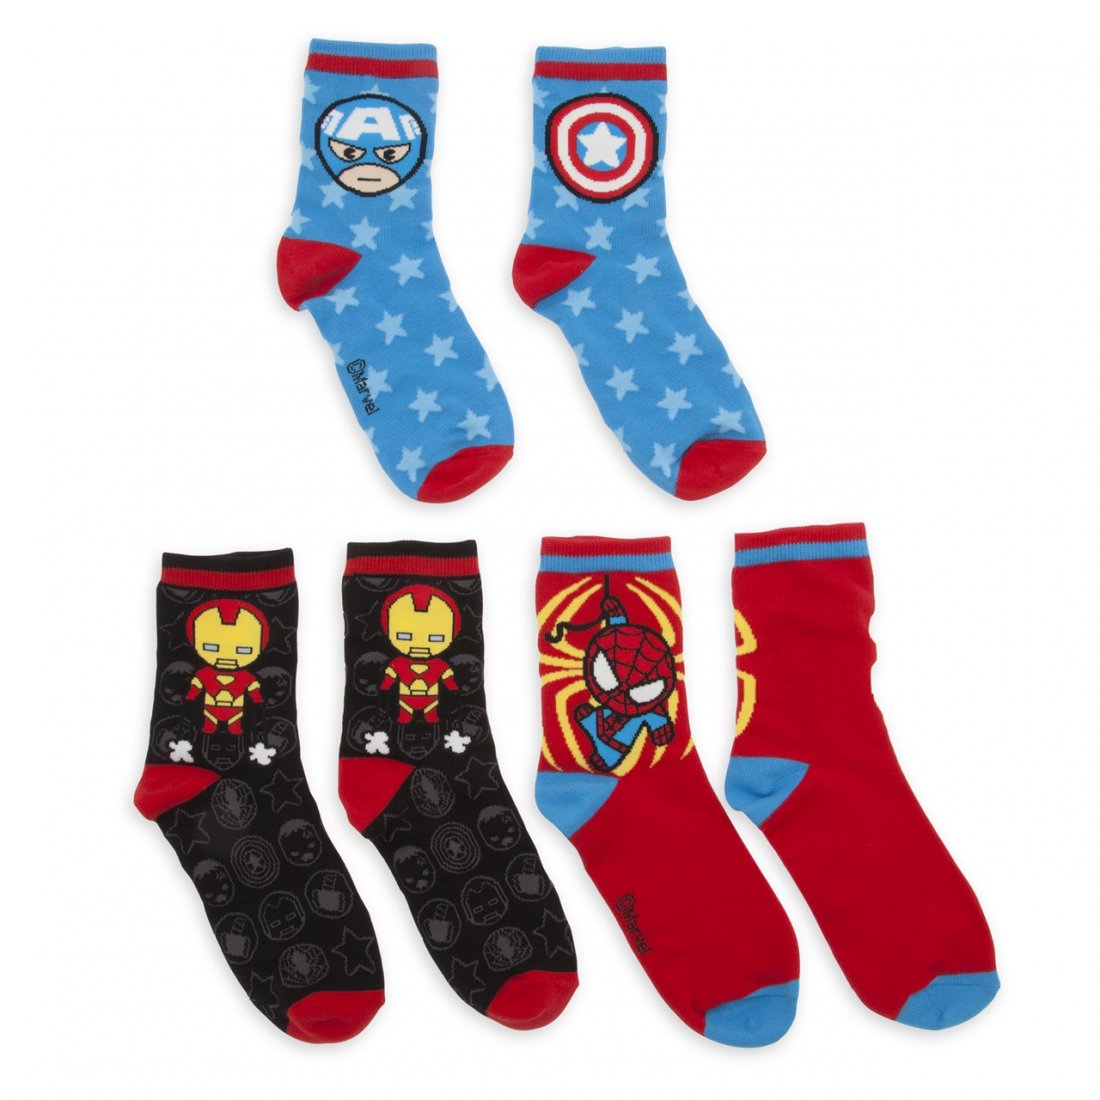 Marvel Mxyzs 3 Pack Of Socks 1599 2099